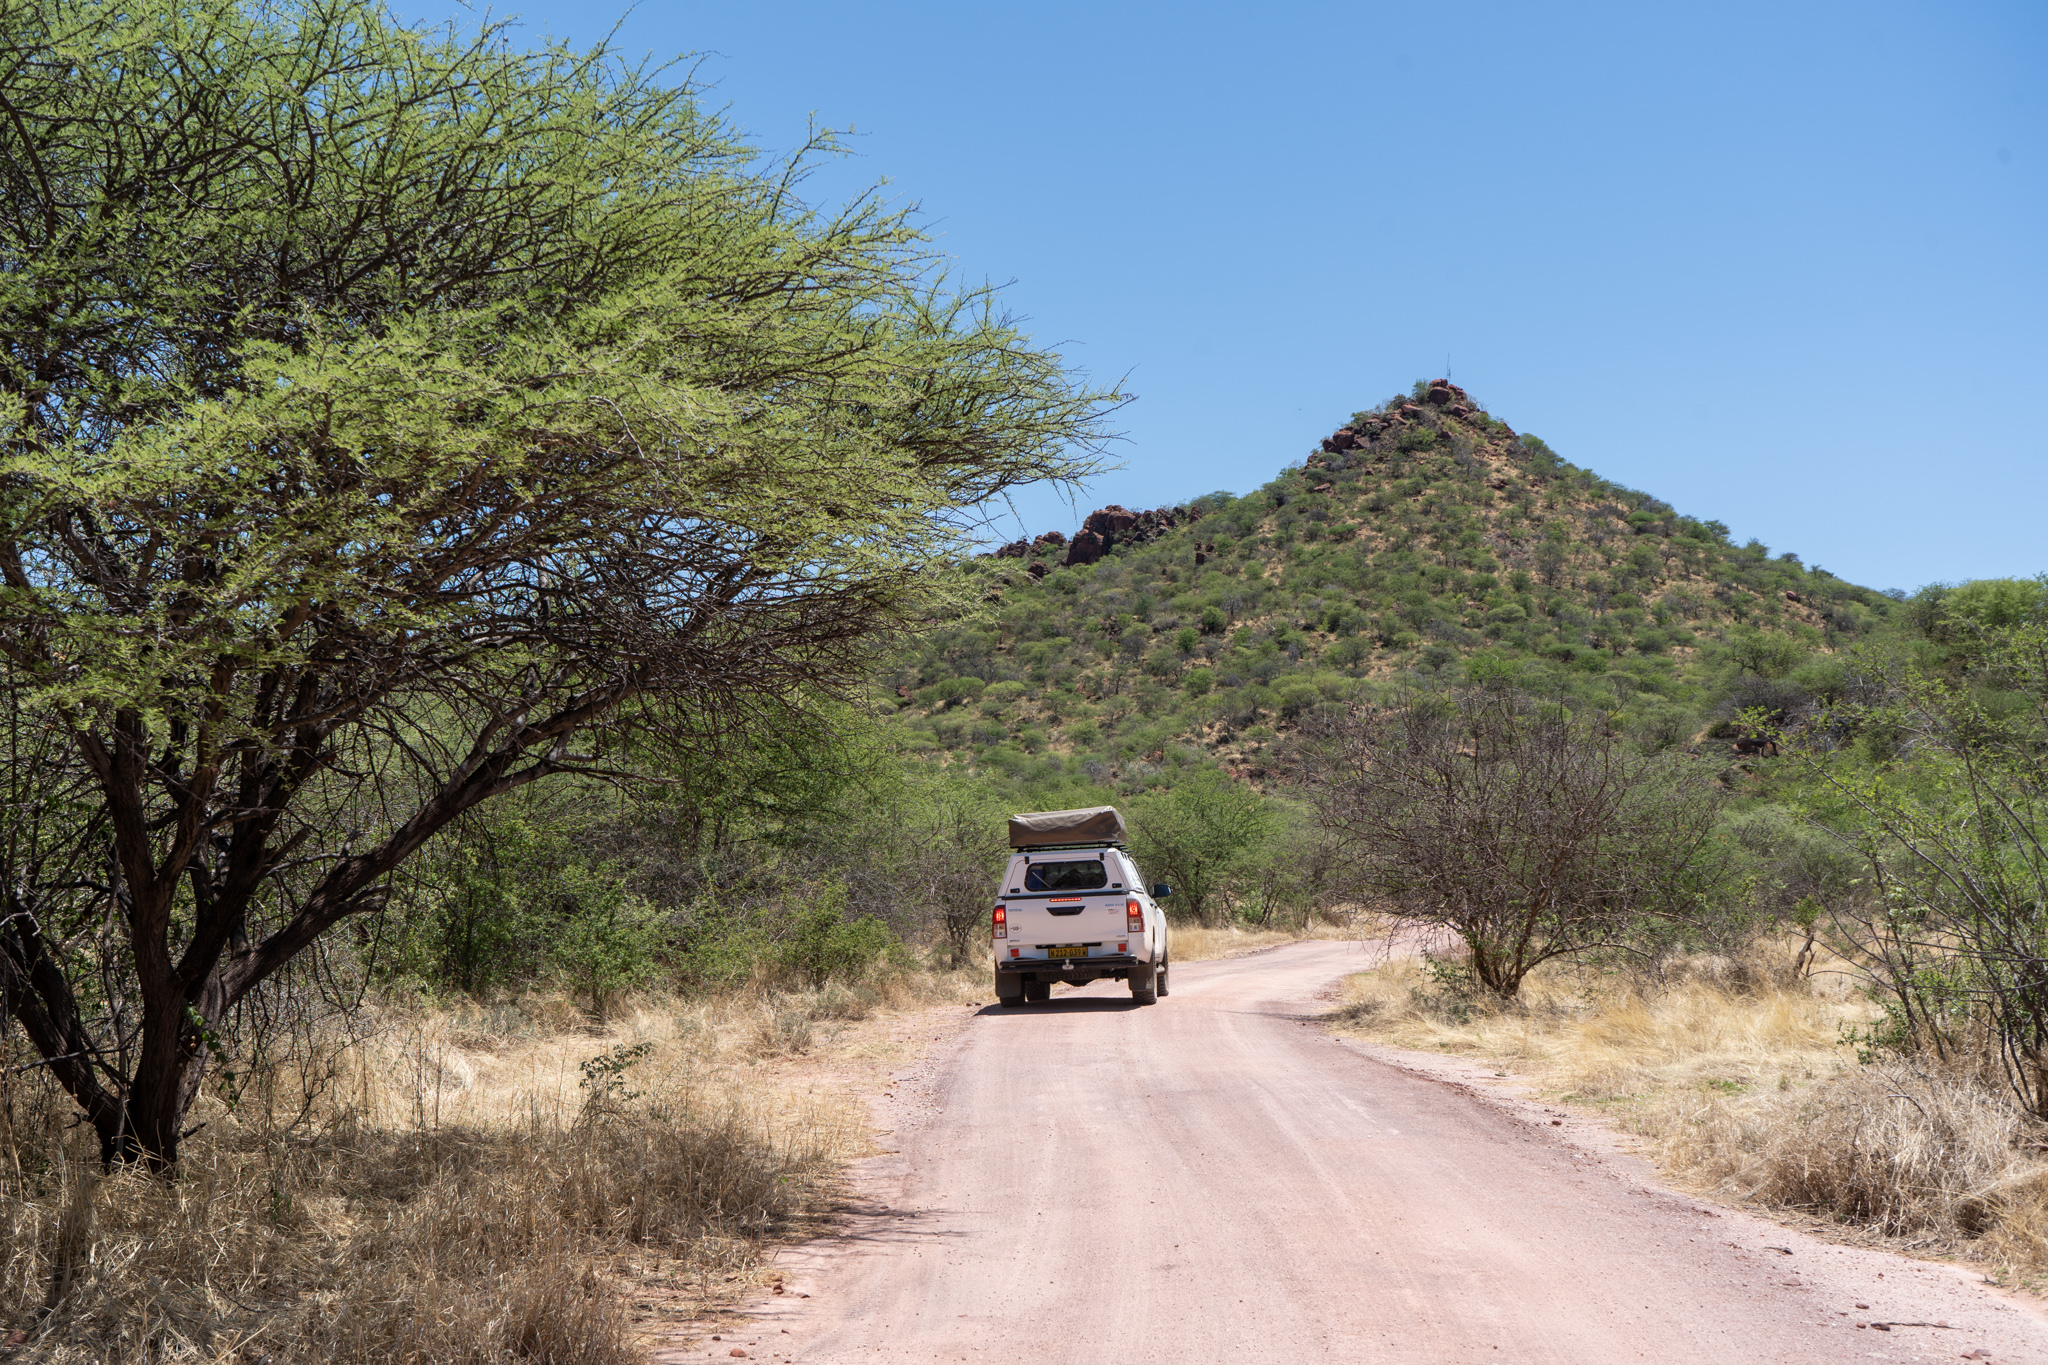 Camping in Namibia: Am besten mit dem Geländewagen